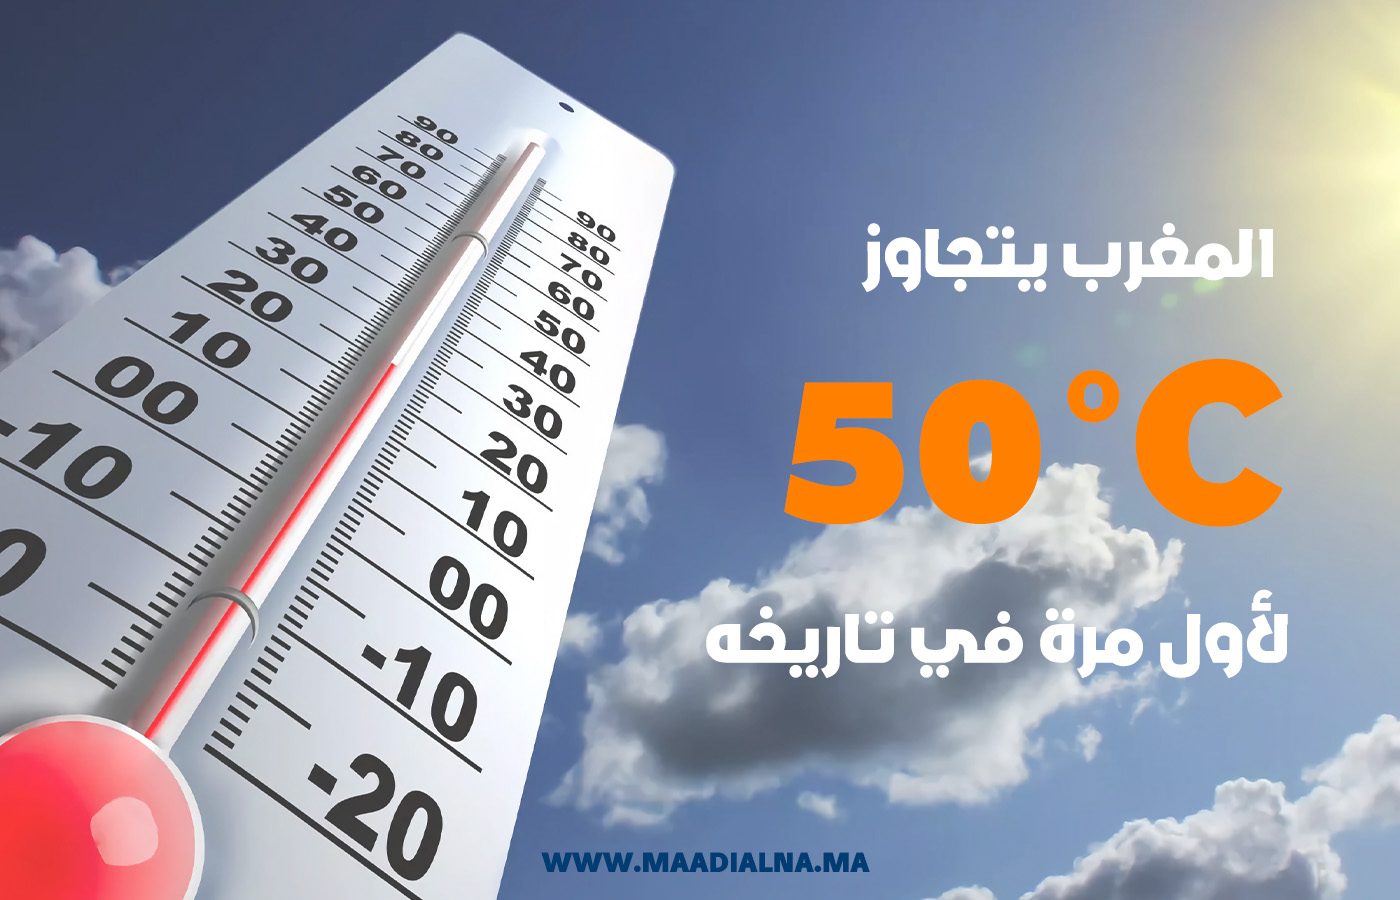 المغرب يتجاوز 50 درجة حرارة مئوية لأول مرة في تاريخه